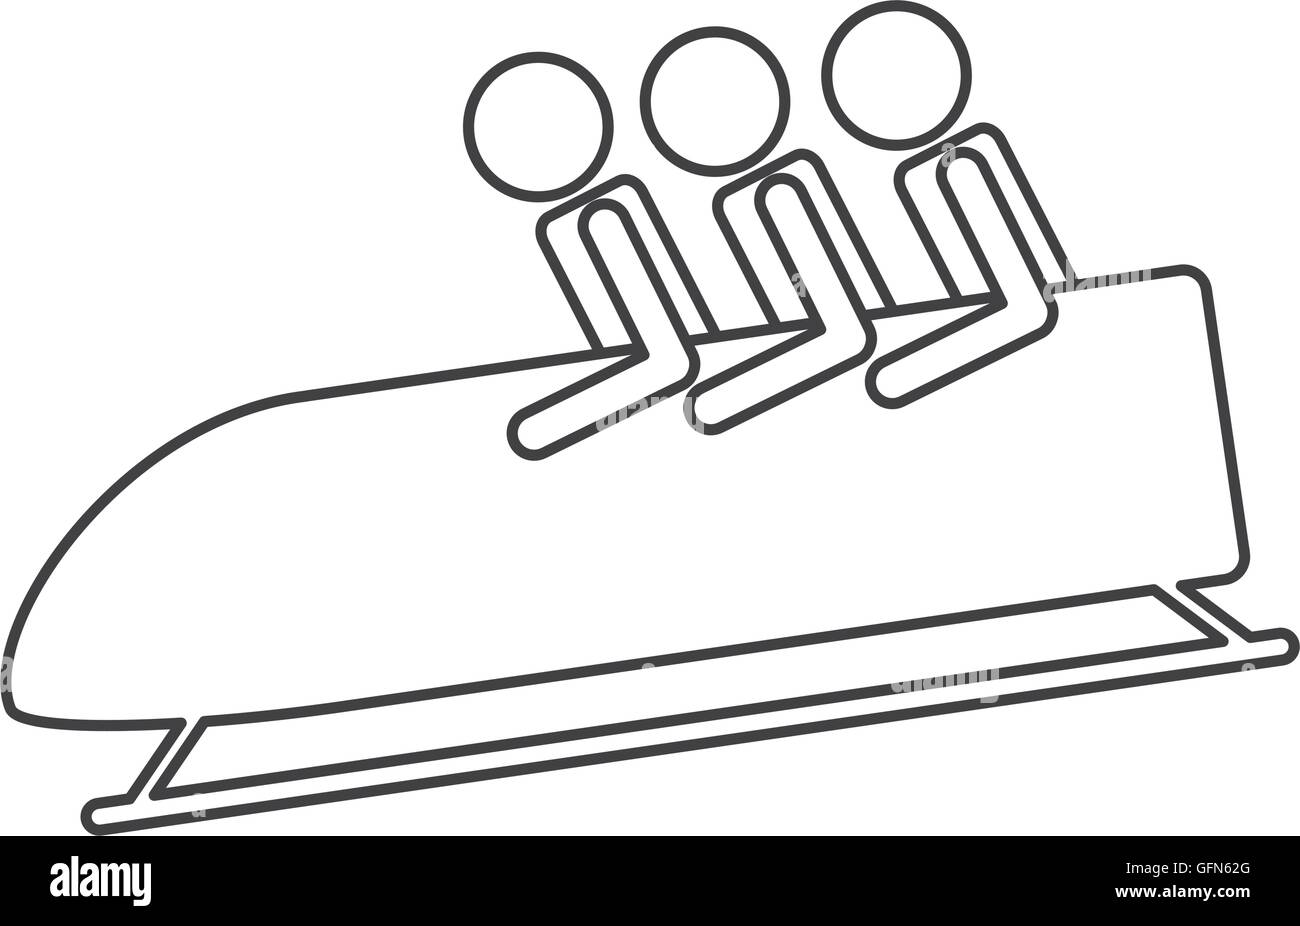 bobsleigh sport icon Stock Vector